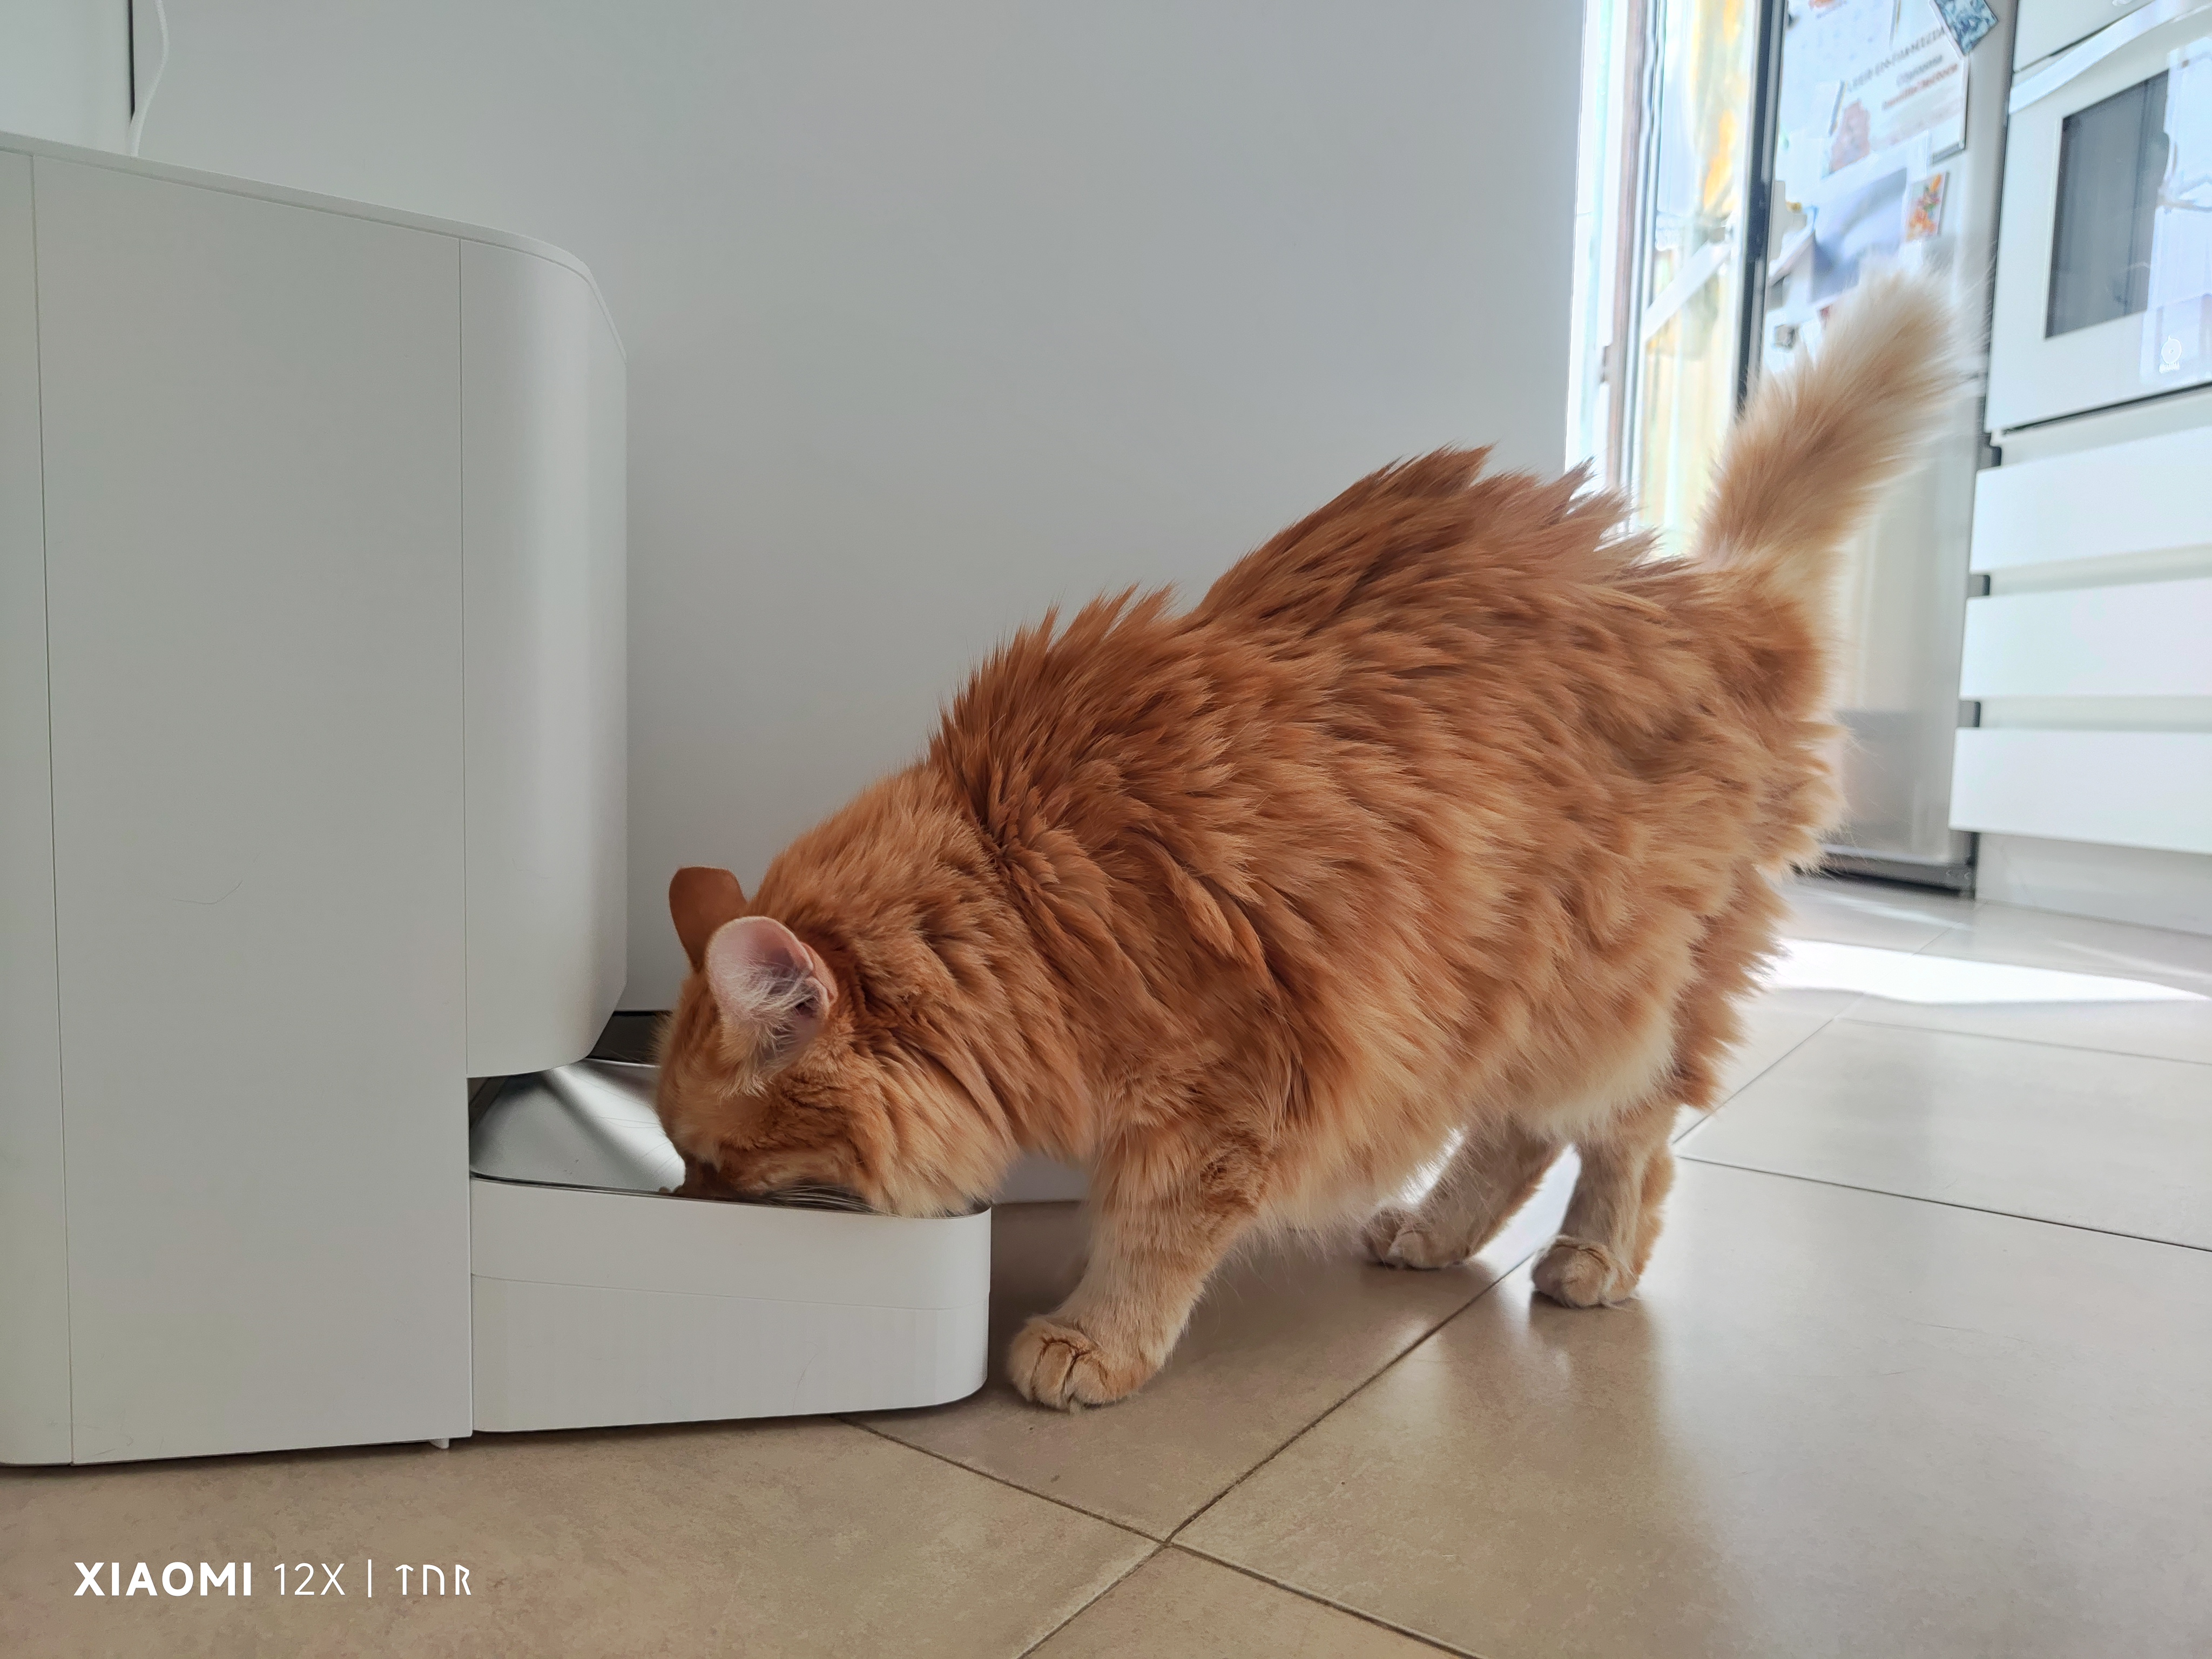 Si tienes gato o perro, Xiaomi ha rebajado su comedero automático  inteligente